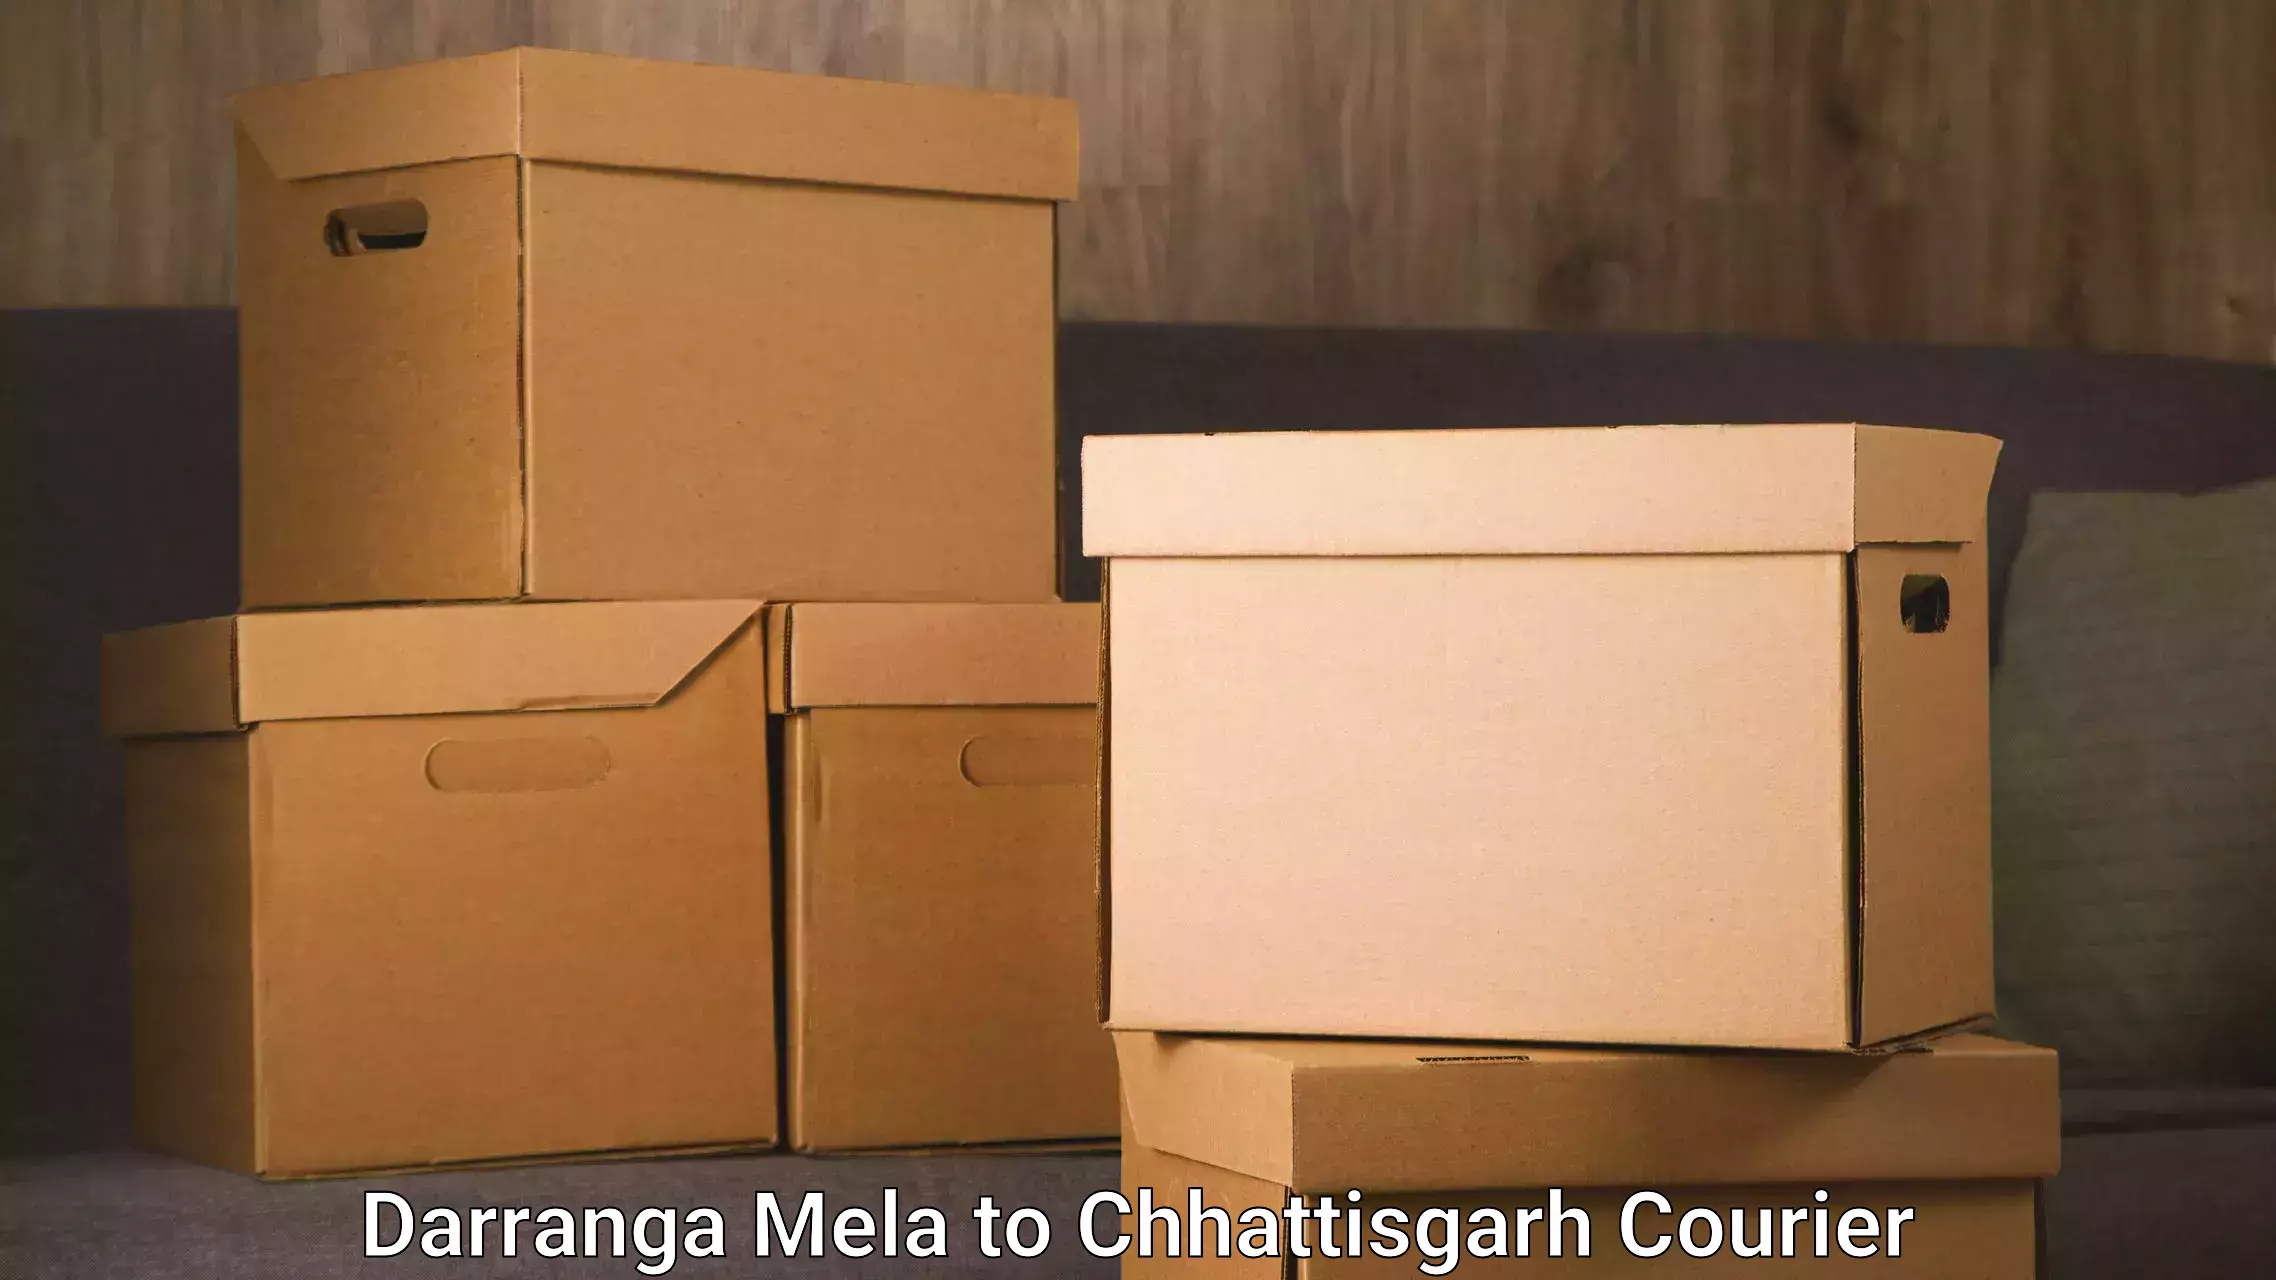 Reliable courier services Darranga Mela to Jashpur Nagar